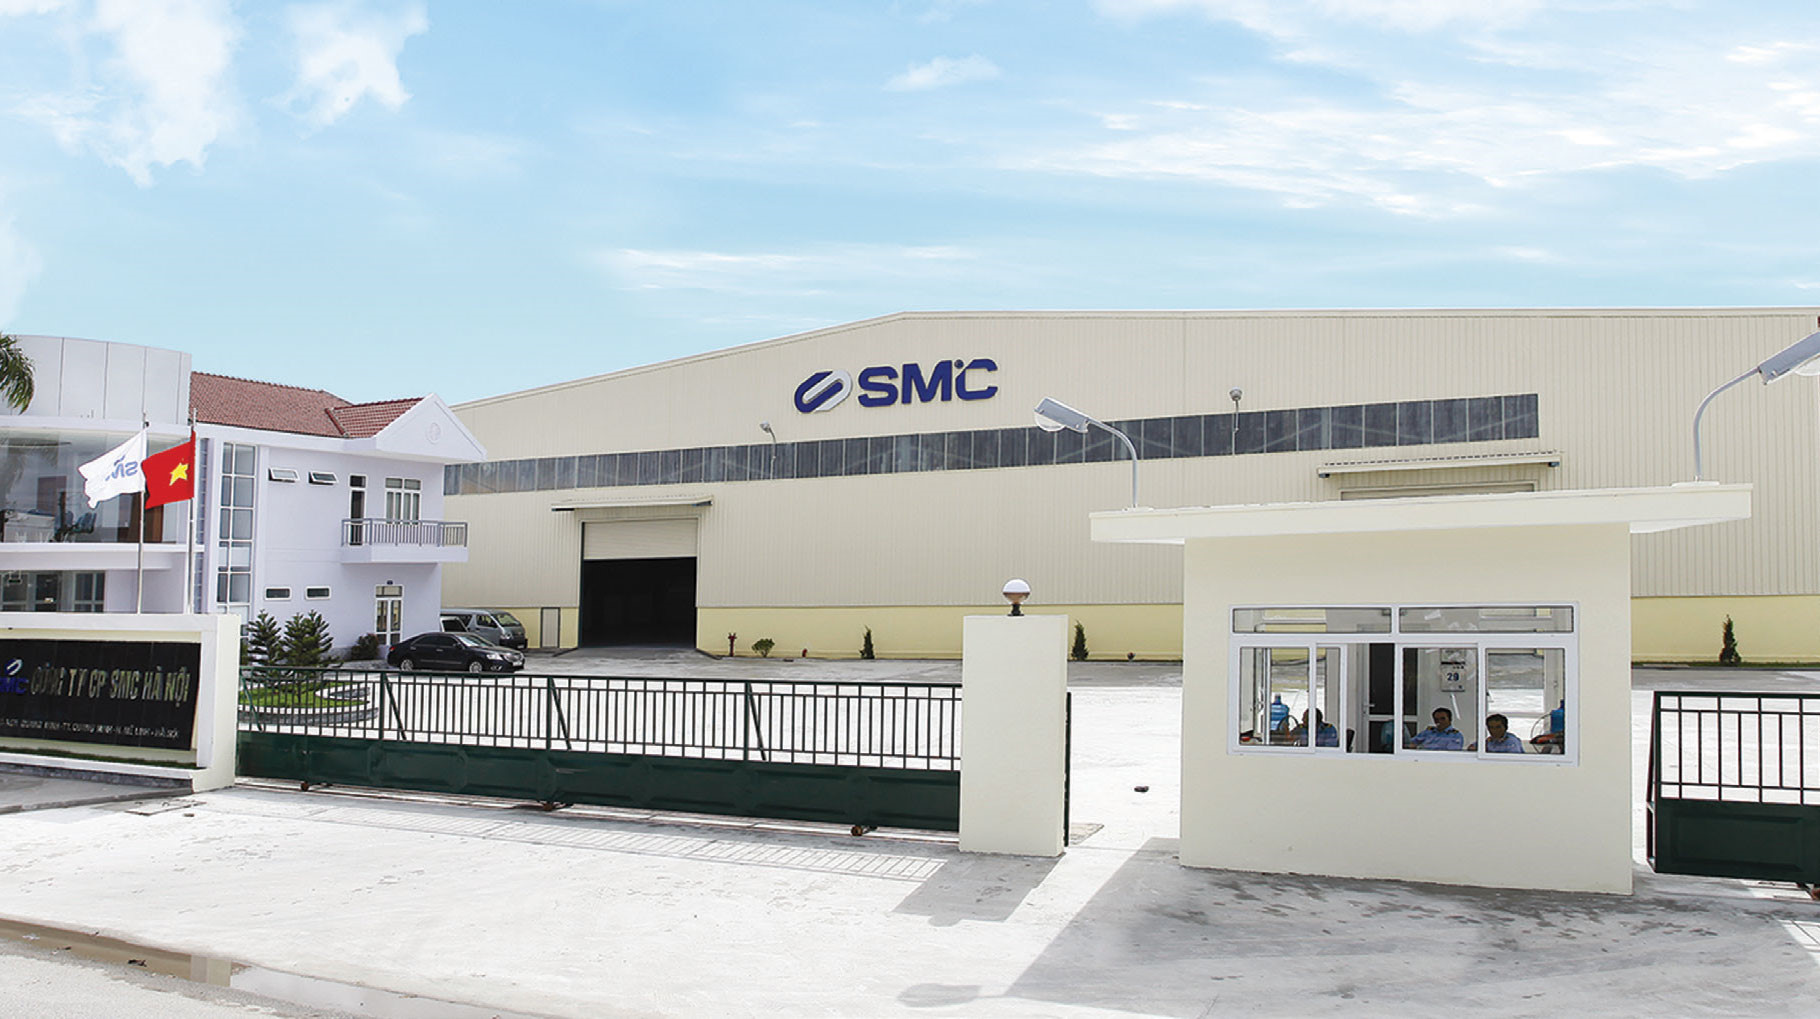 SMC muốn huy động 200 tỷ đồng trái phiếu với mệnh giá 1 tỷ đồng/trái phiếu